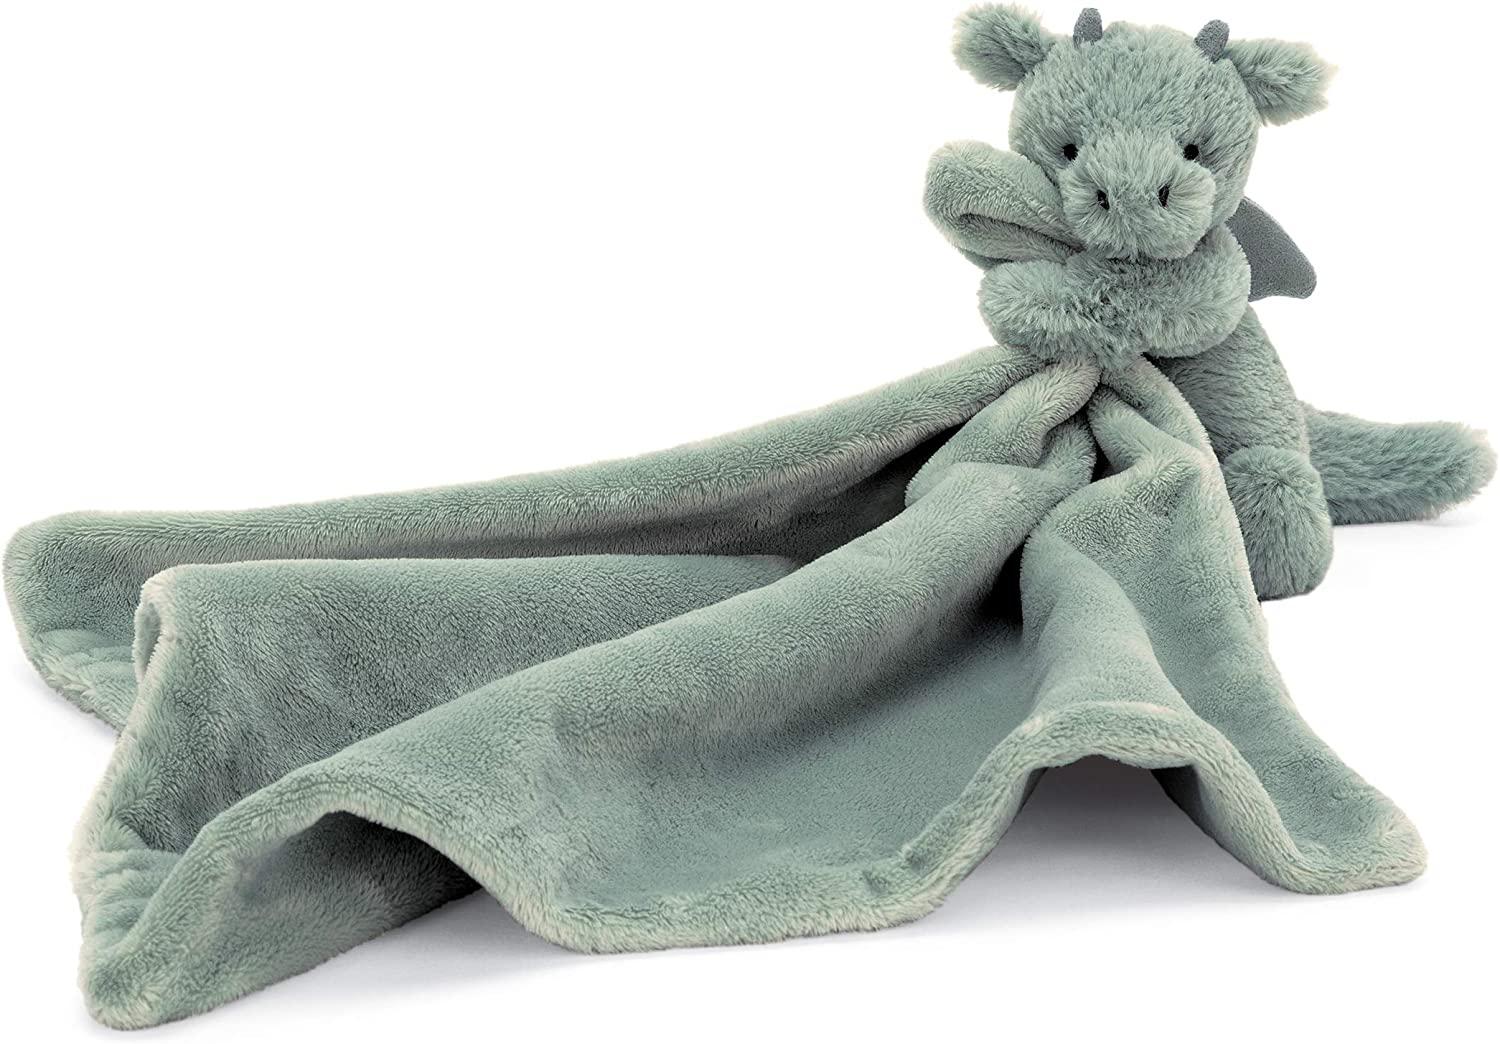 Green Baby Stuffed Animal Blanket